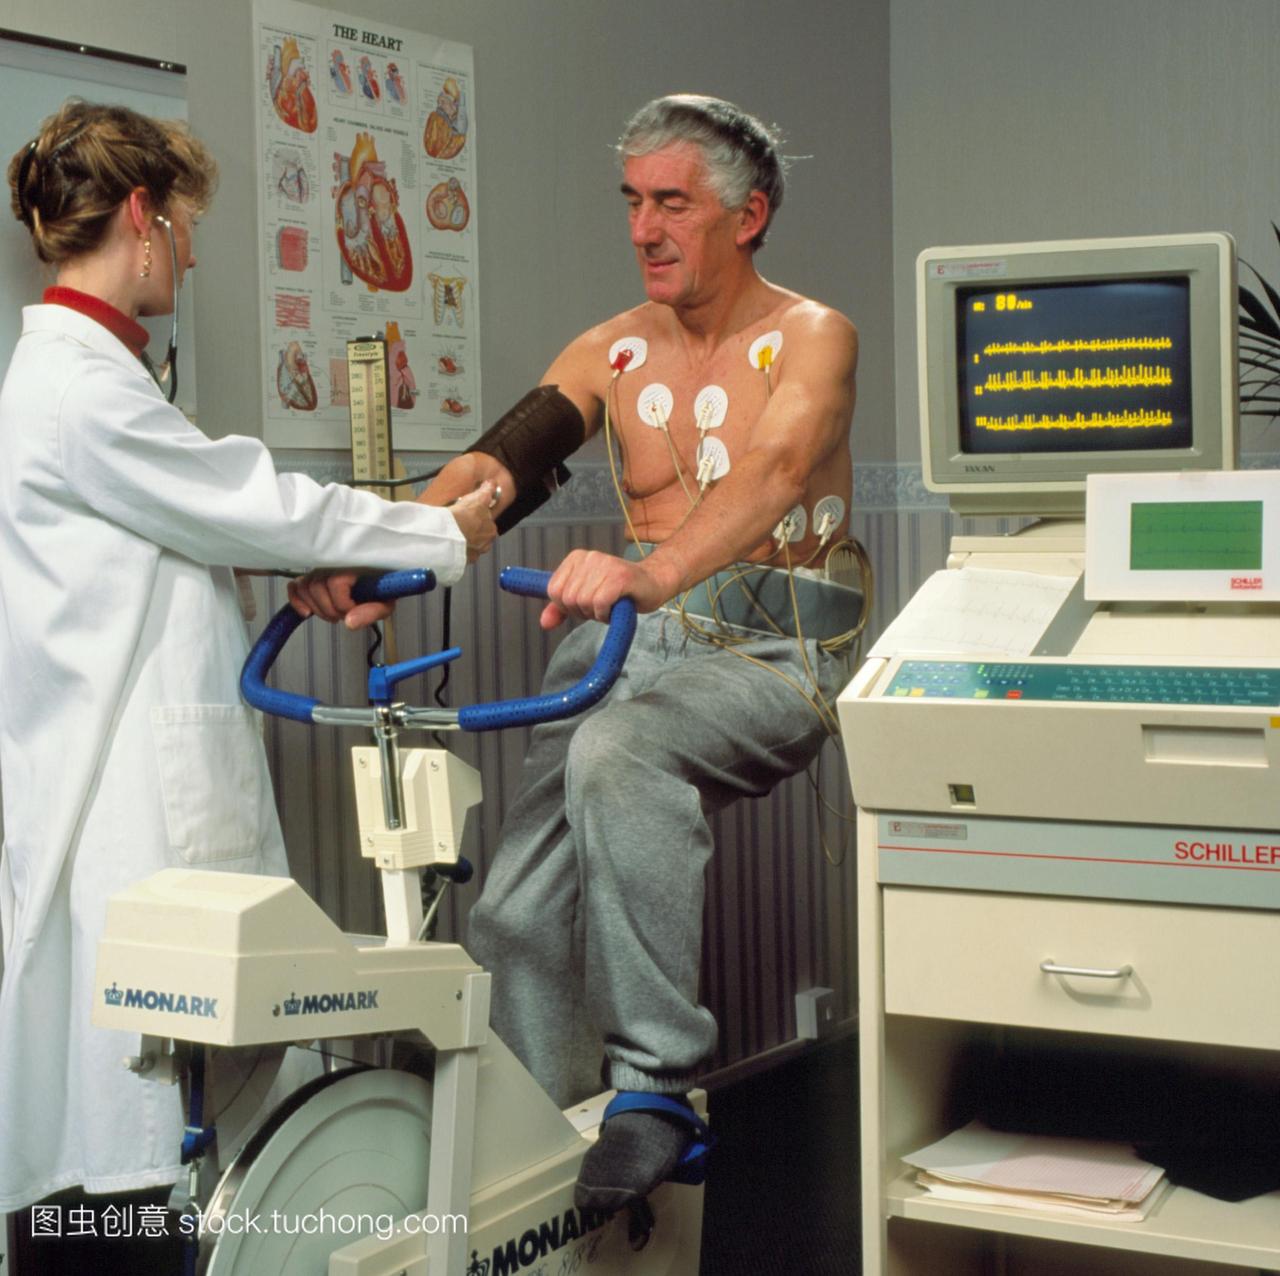 的心跳。心电图压力测试用于监测心绞痛胸部疼